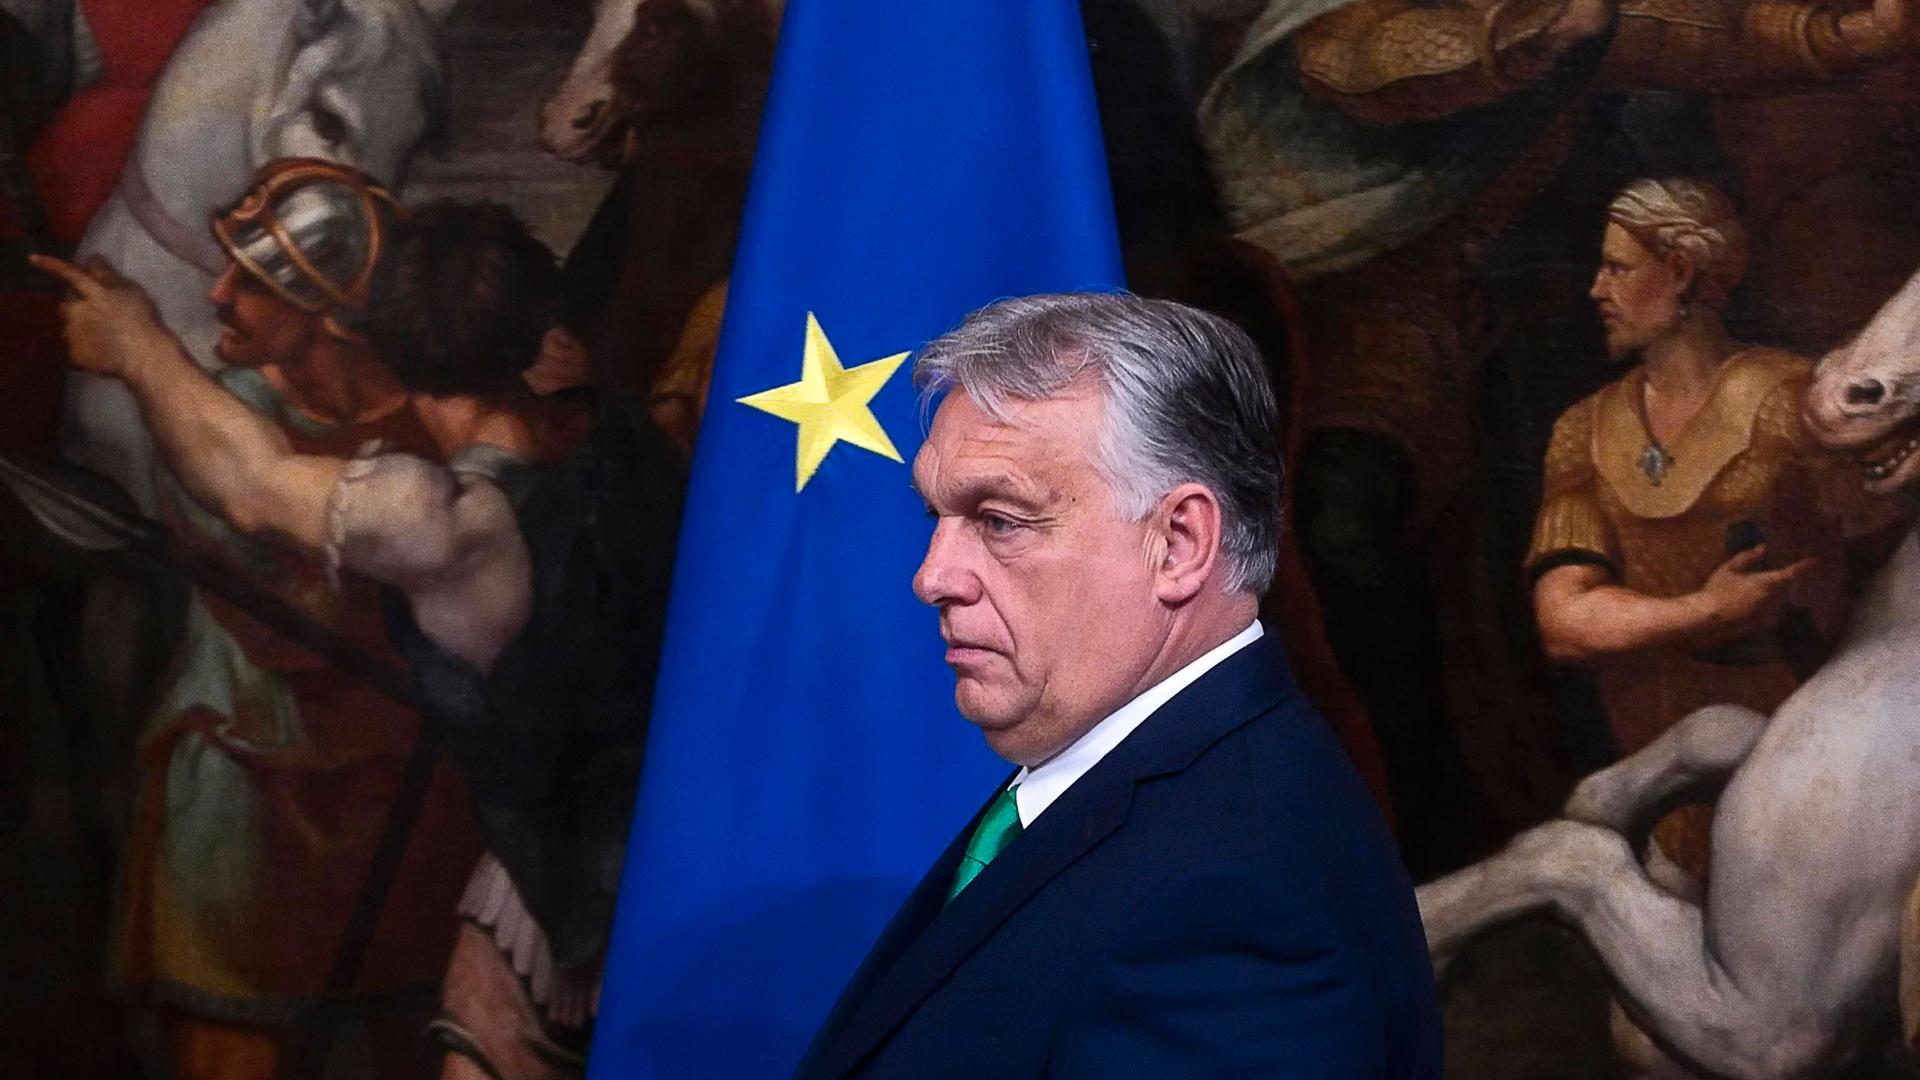 Der ungarische Ministerpräsident Viktor Orban vor der EU-Flagge während einer Pressekonferenz im Chigi-Palast in Rom.